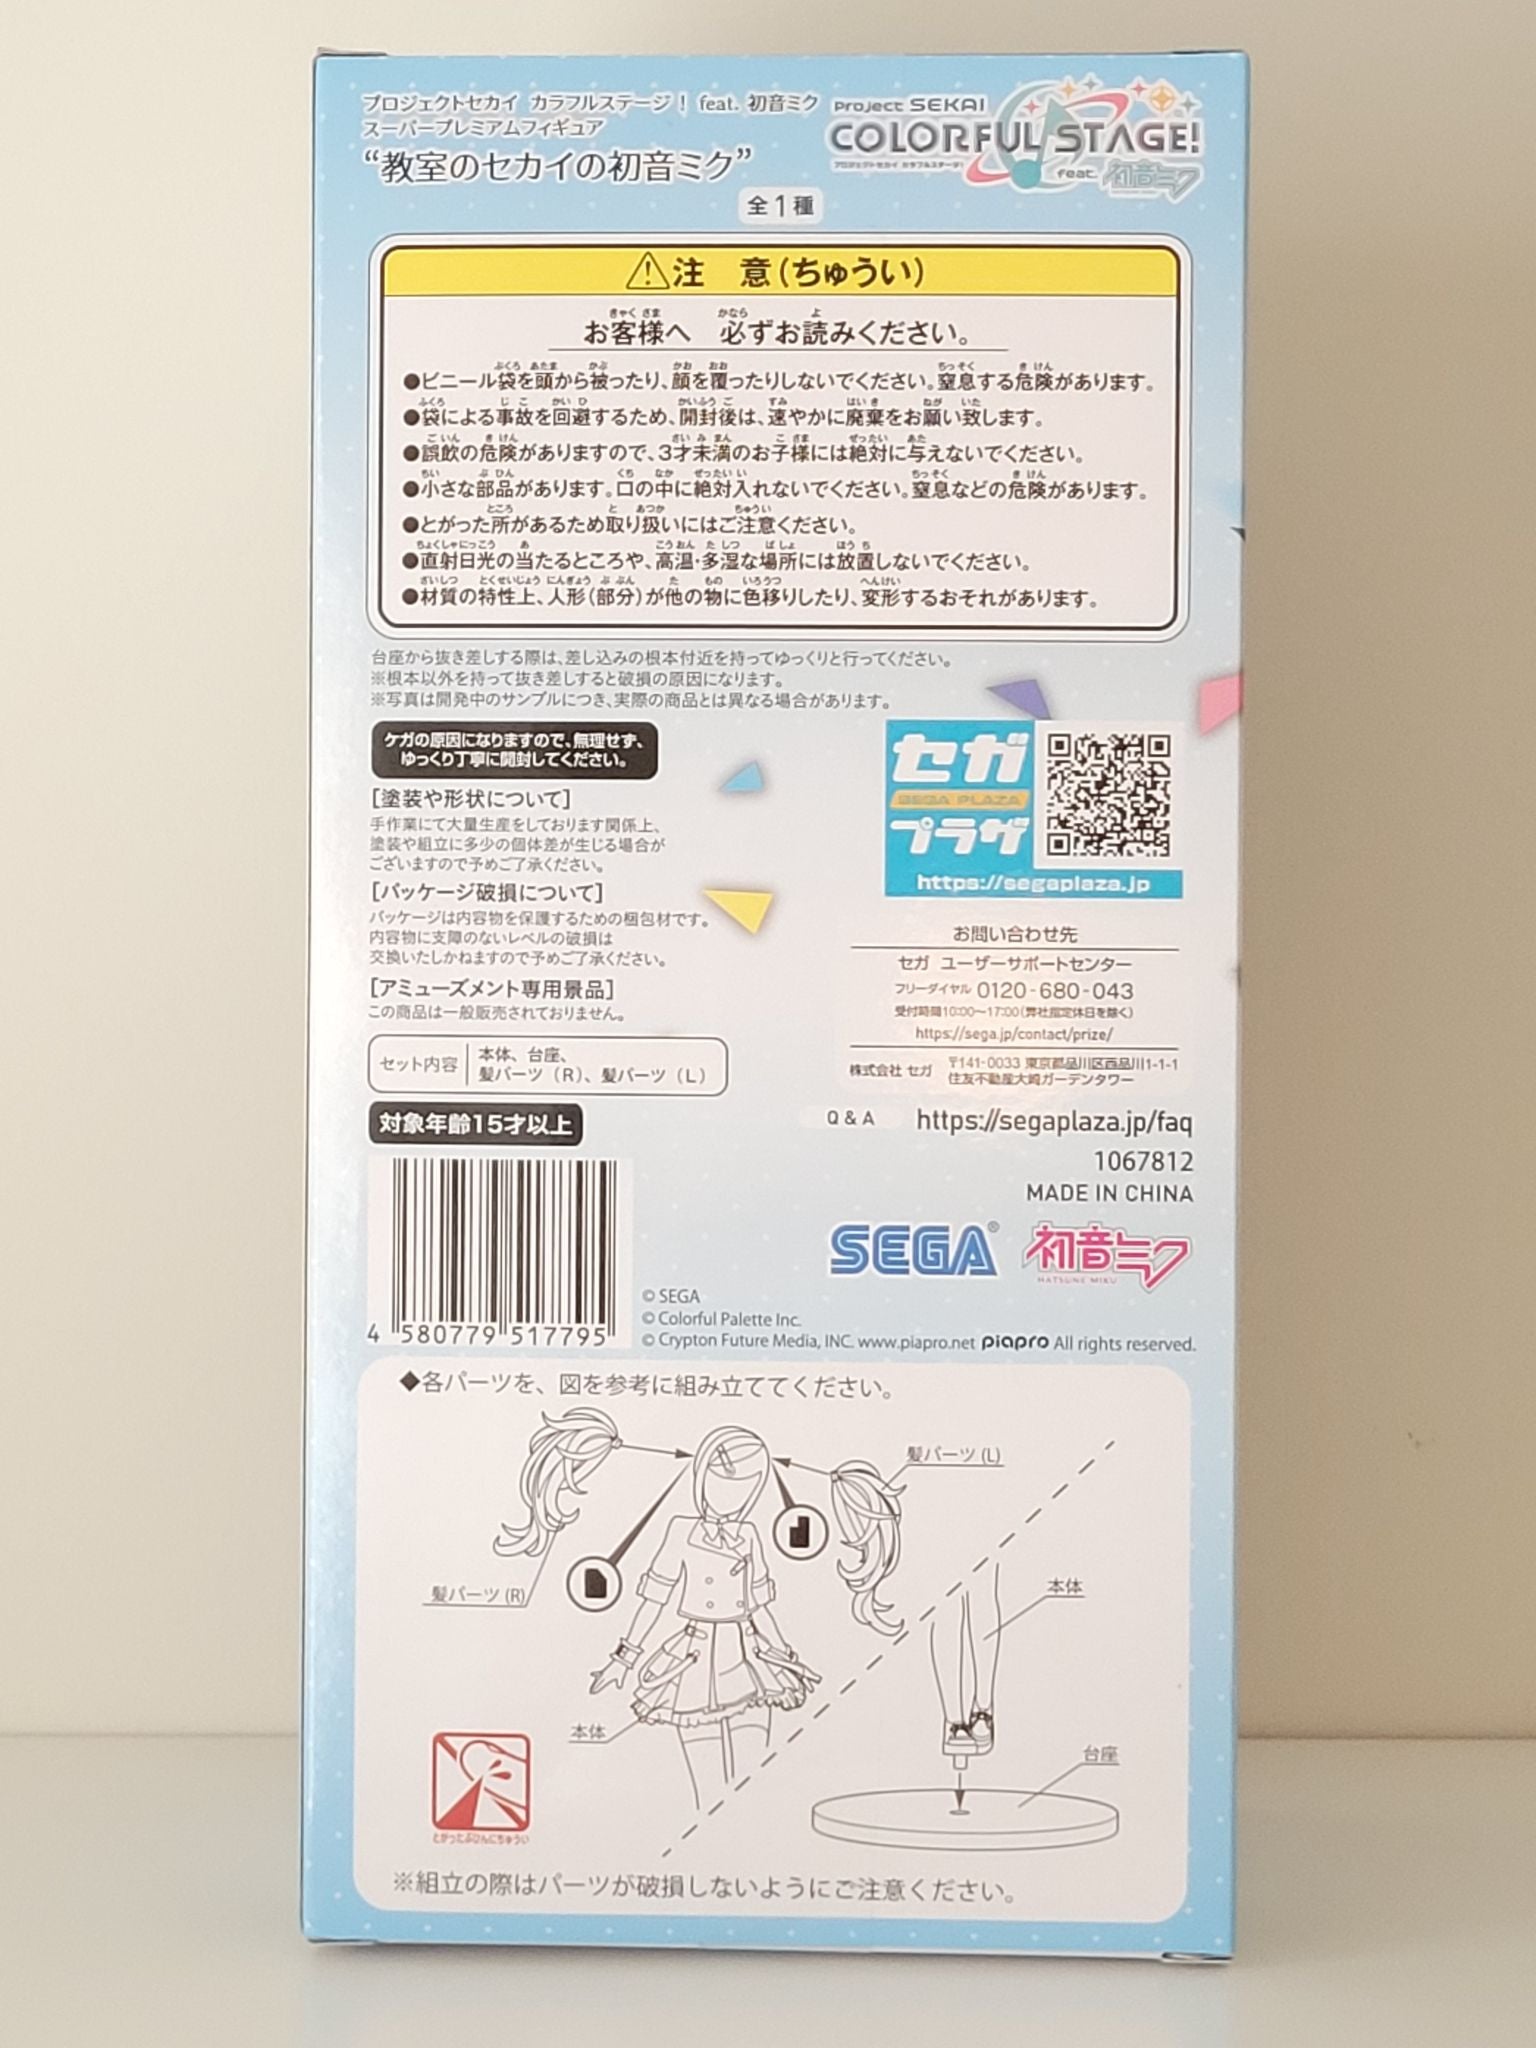 Hatsune Miku "Project Sekai Colorful Stage Ver." Super Premium figure by SEGA - 5